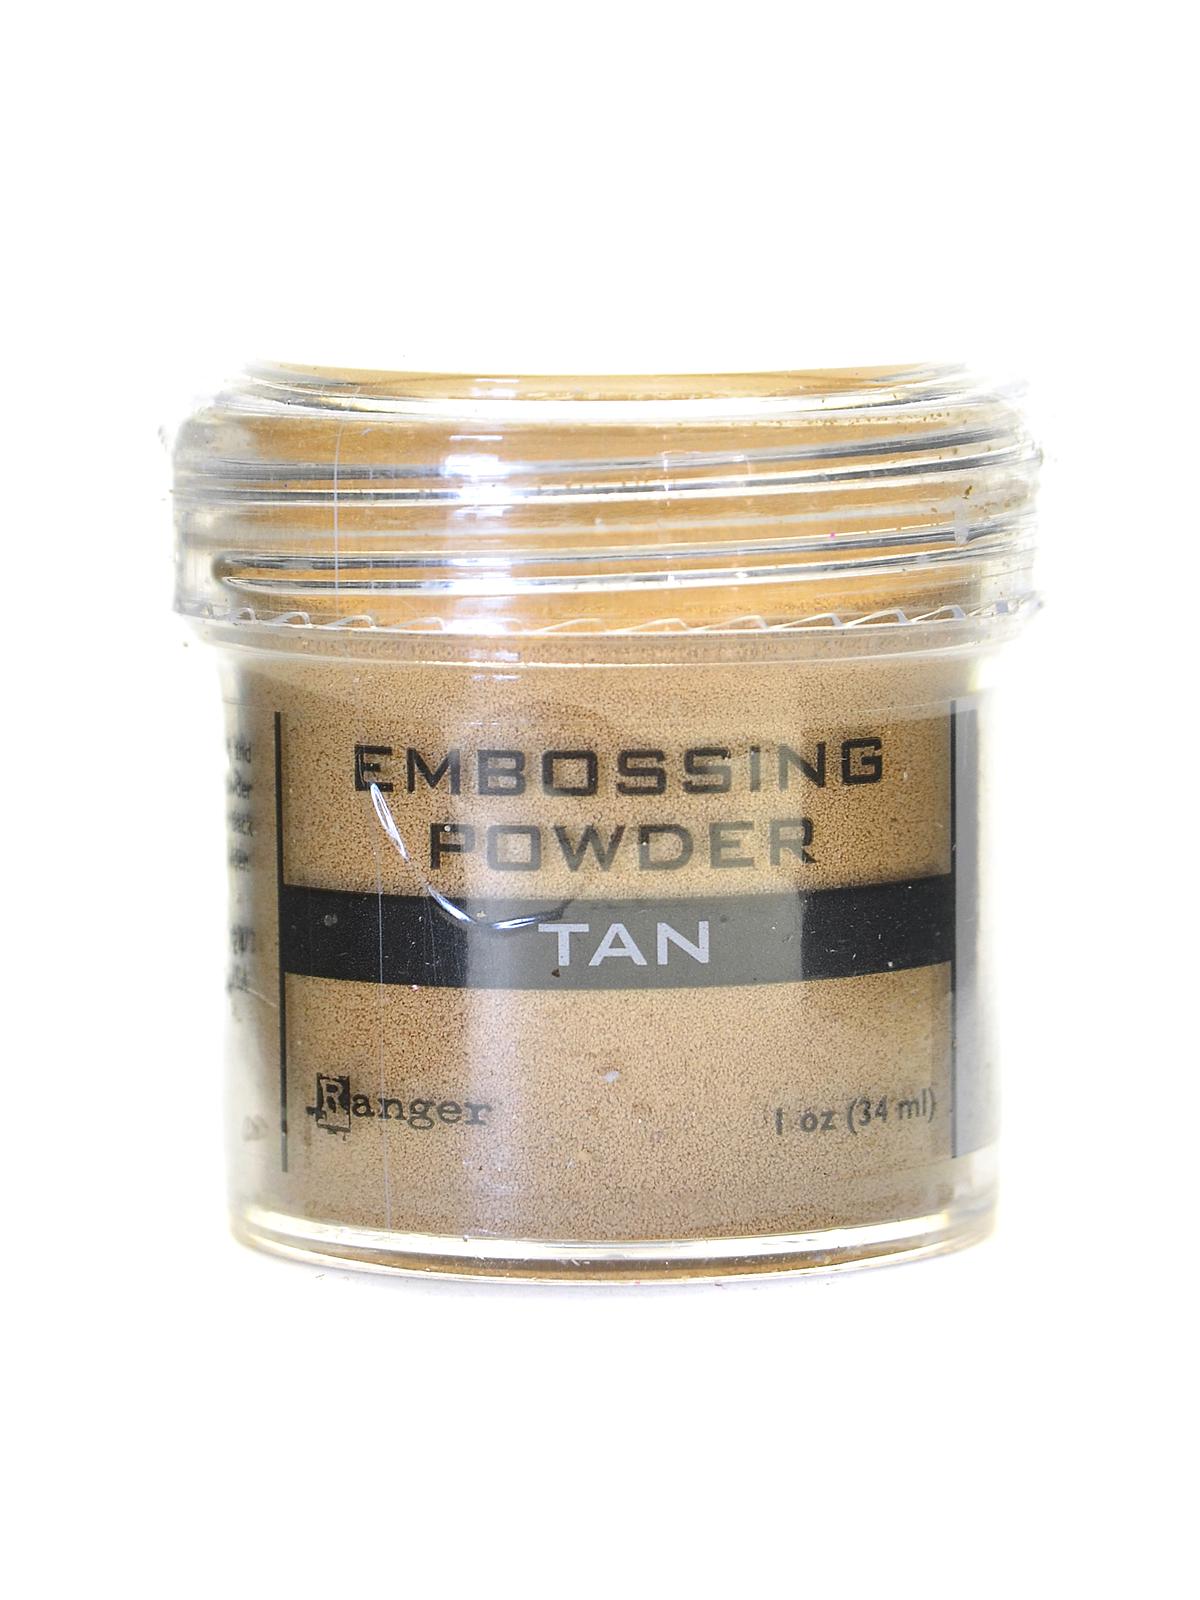 Embossing Powder Tan 1 Oz. Jar